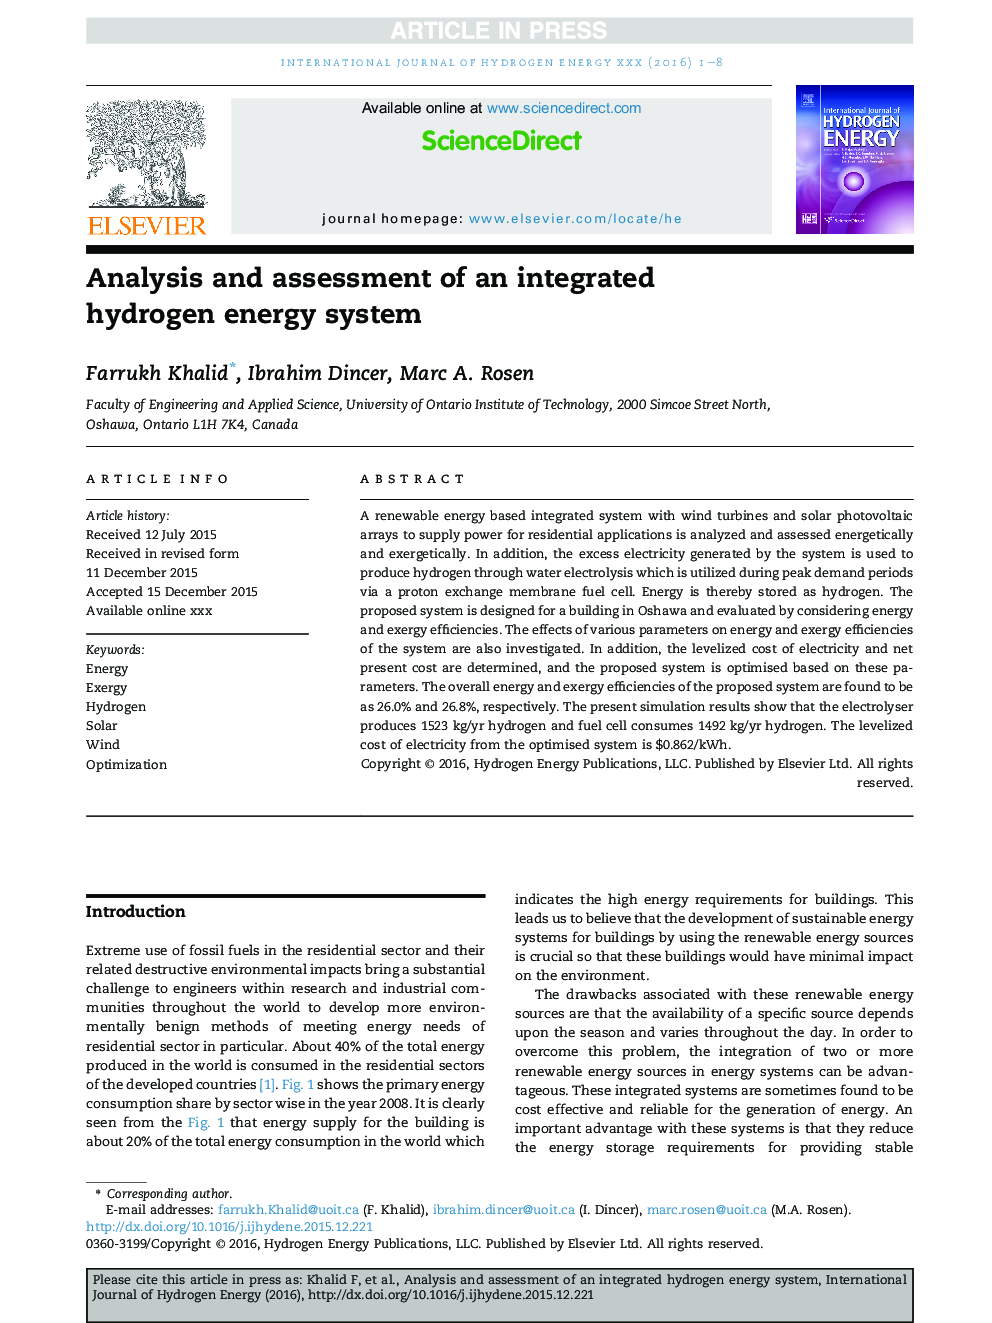 تجزیه و تحلیل و ارزیابی سیستم یکپارچه انرژی هیدروژنی 